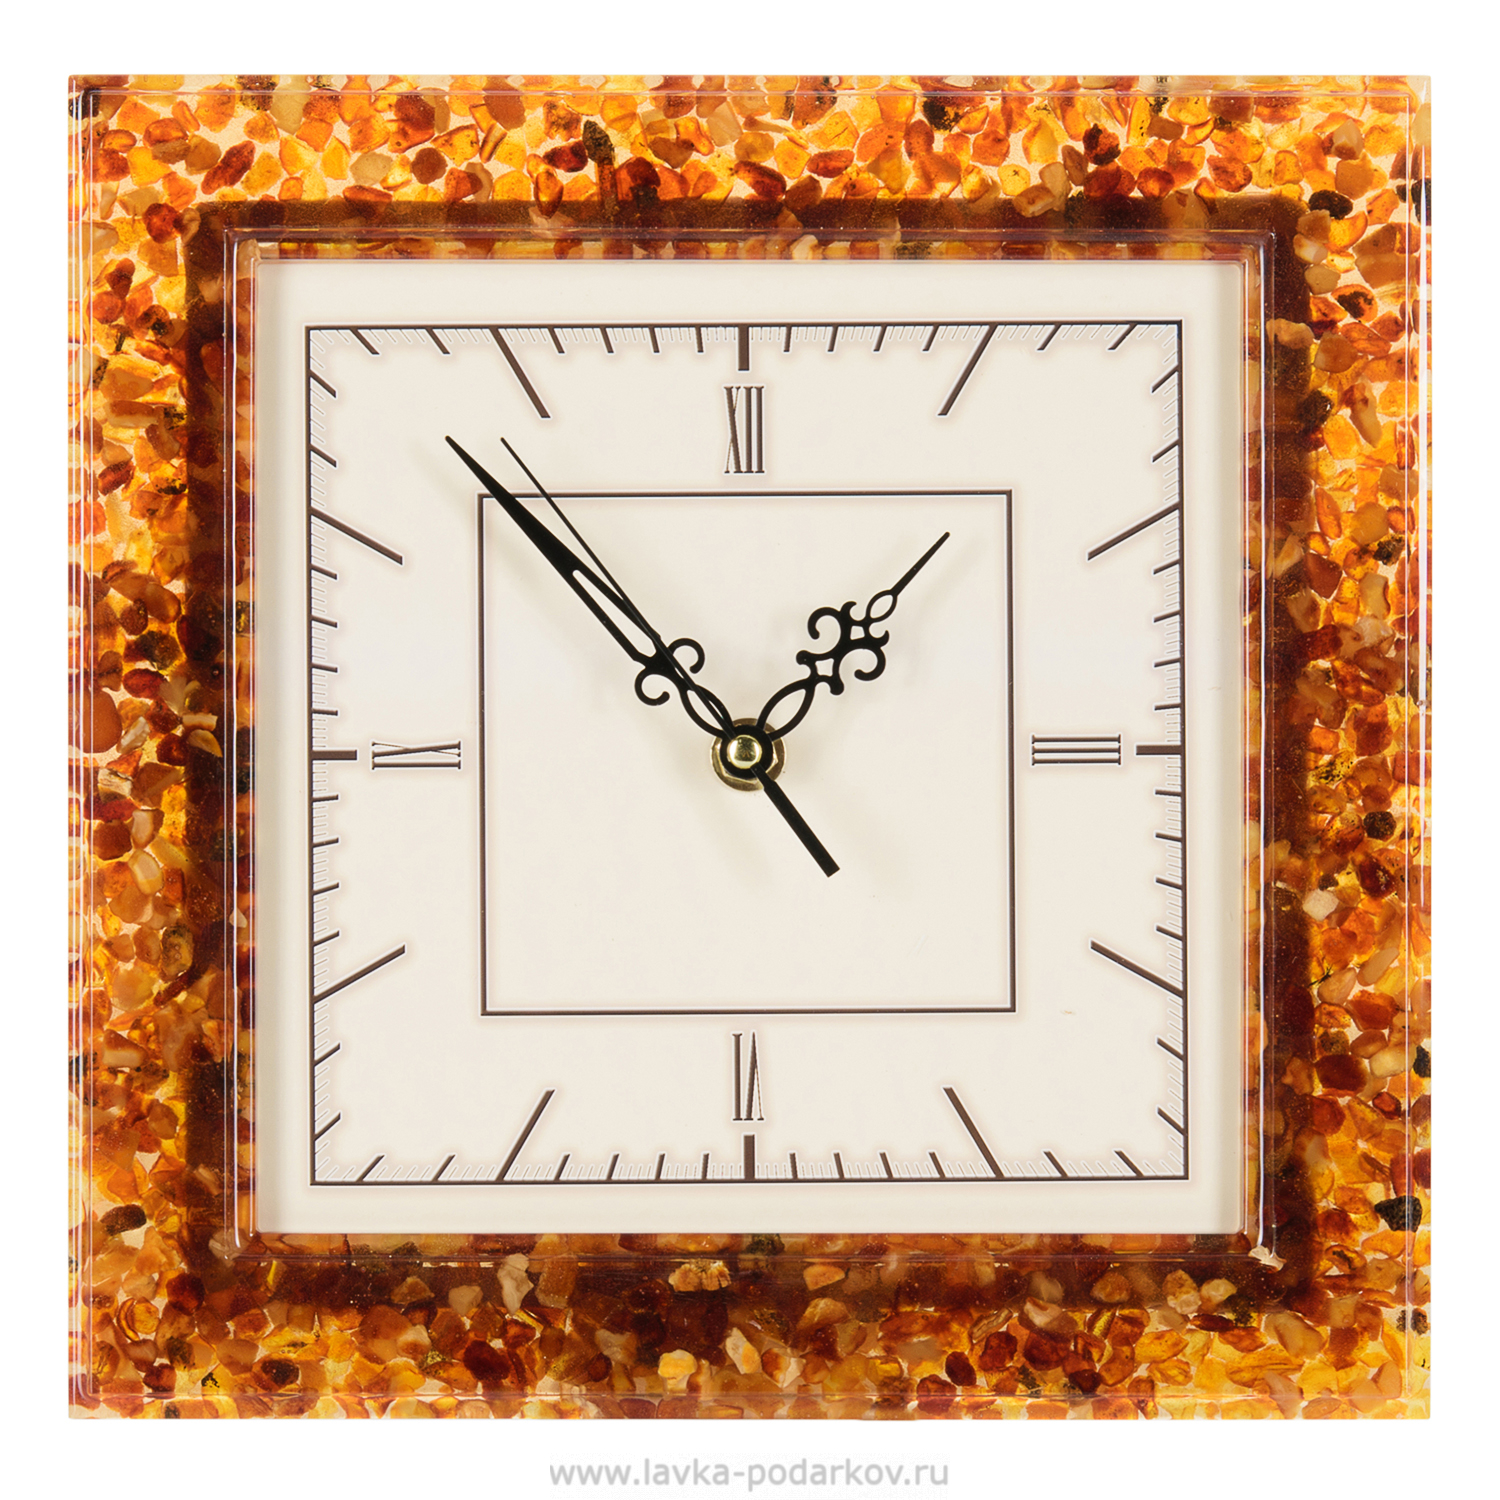 Часы настенные из янтаря квадратные, арт. 800680078 — 9500 руб. купить в каталоге интернет-магазина Лавка Подарков в Москве